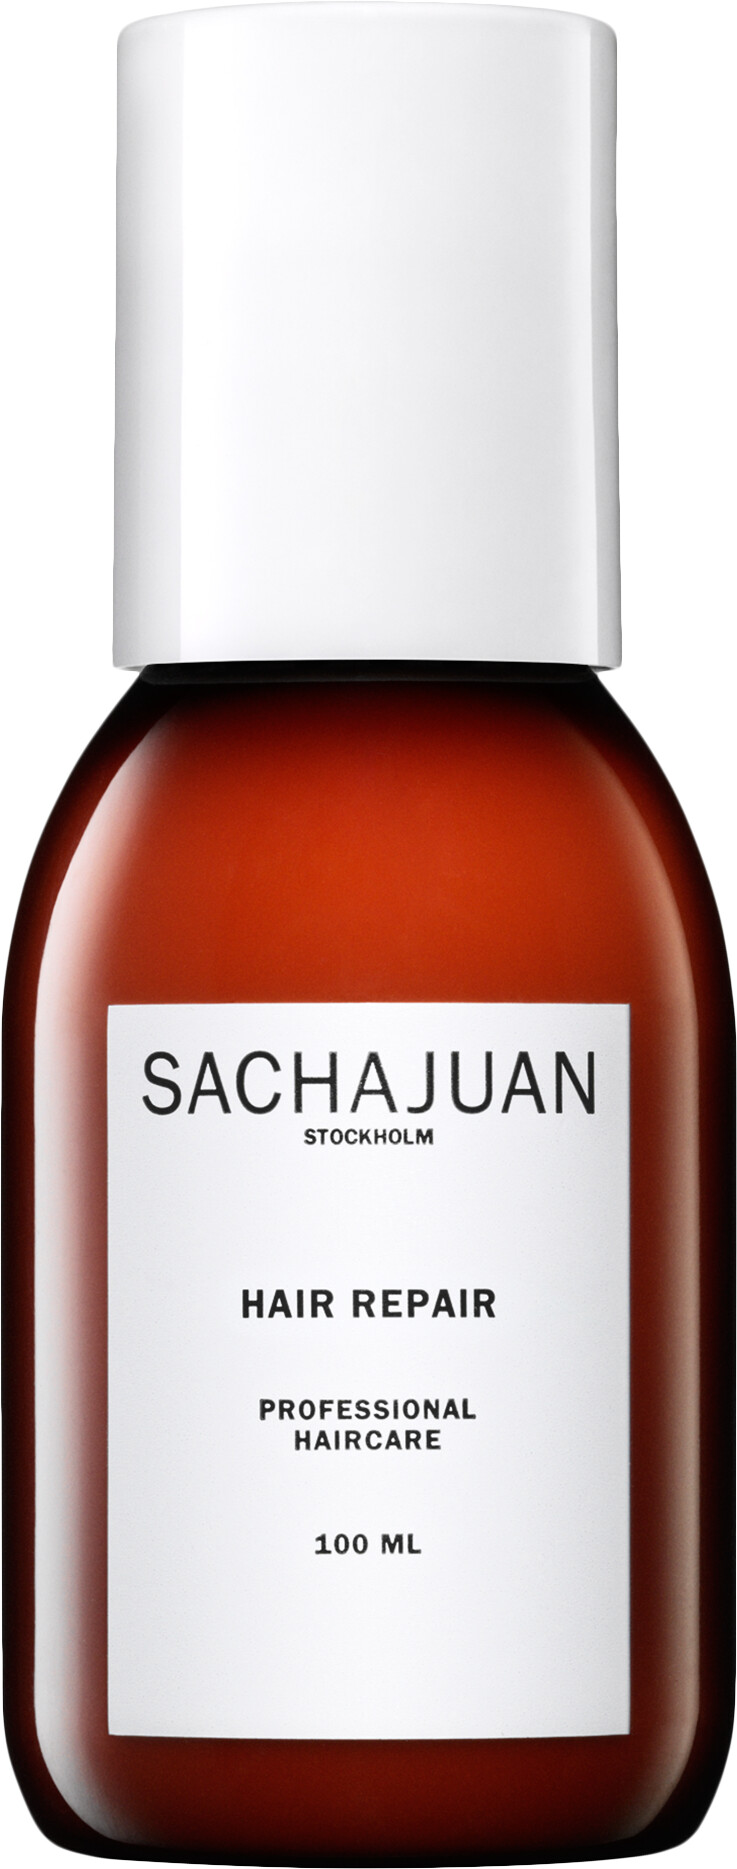 Sachajuan Hair Repair 100ml